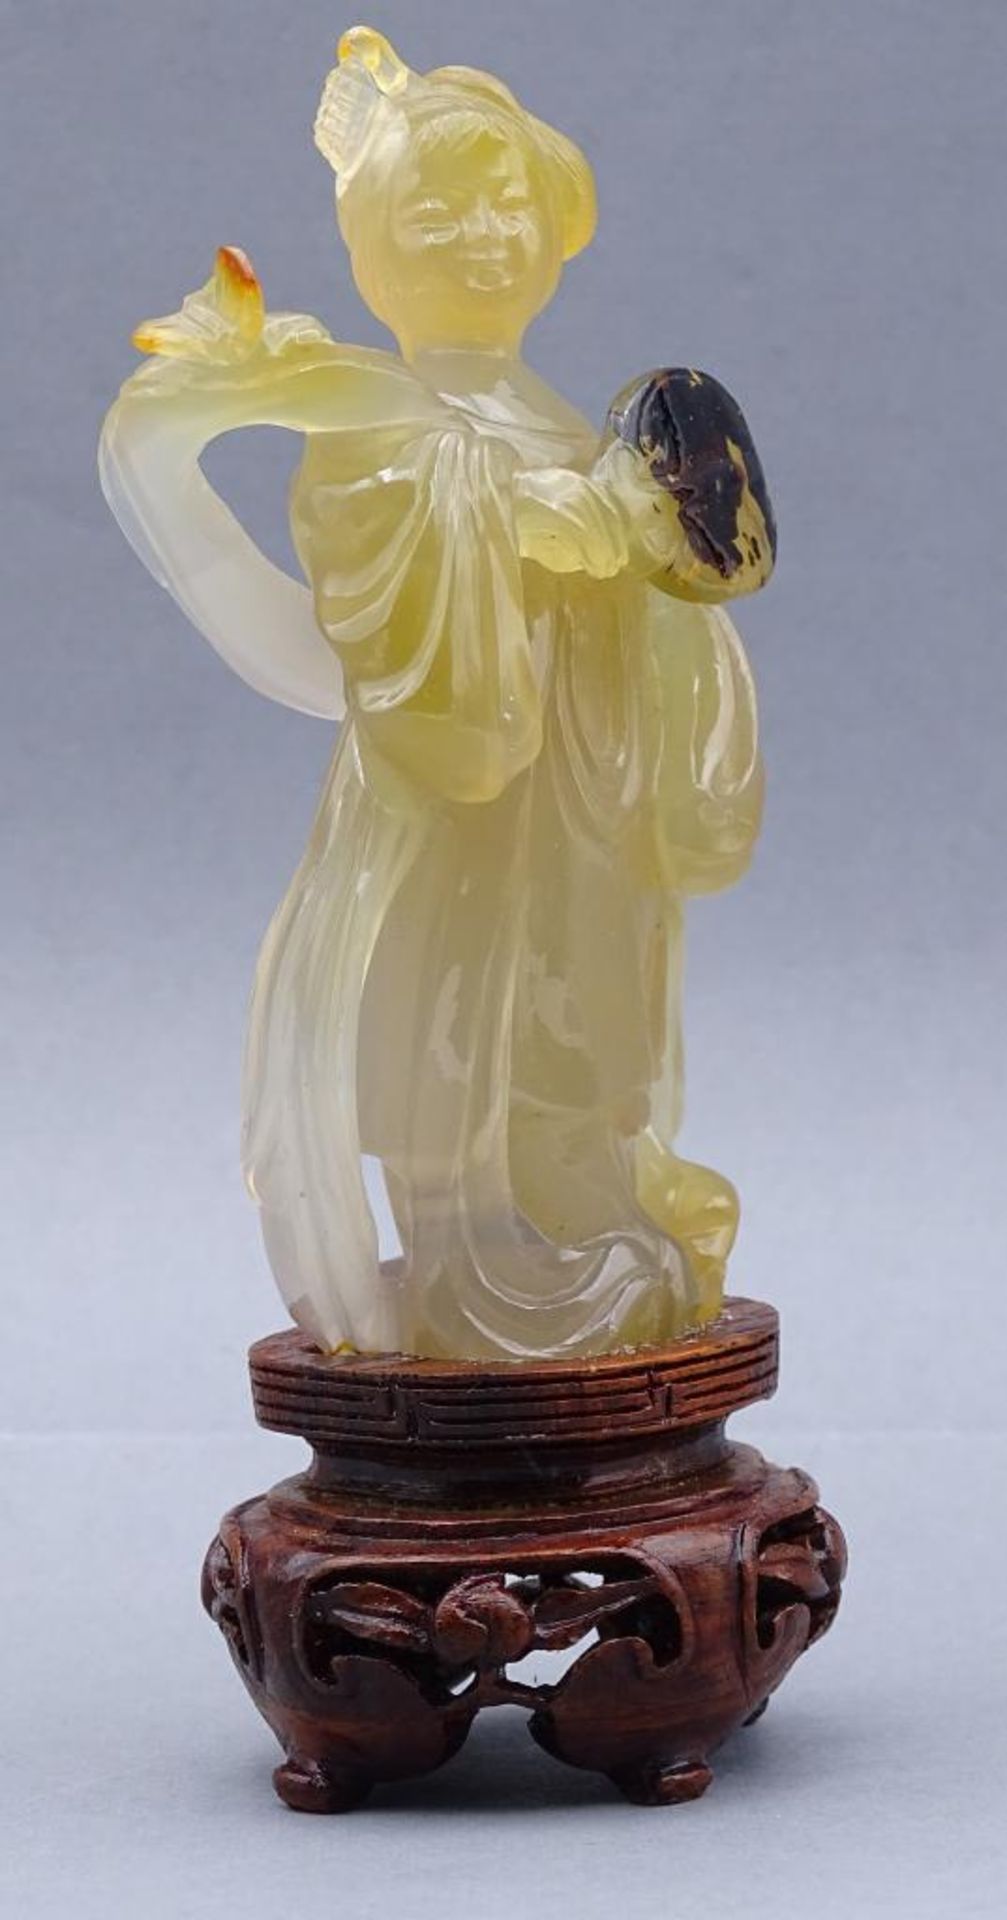 gelbe Jadeschnitzerei, Chinesin mit Fächer auf Holzsockel, China, 18/19. Jhd? , H-ca. 14 cm, rechte